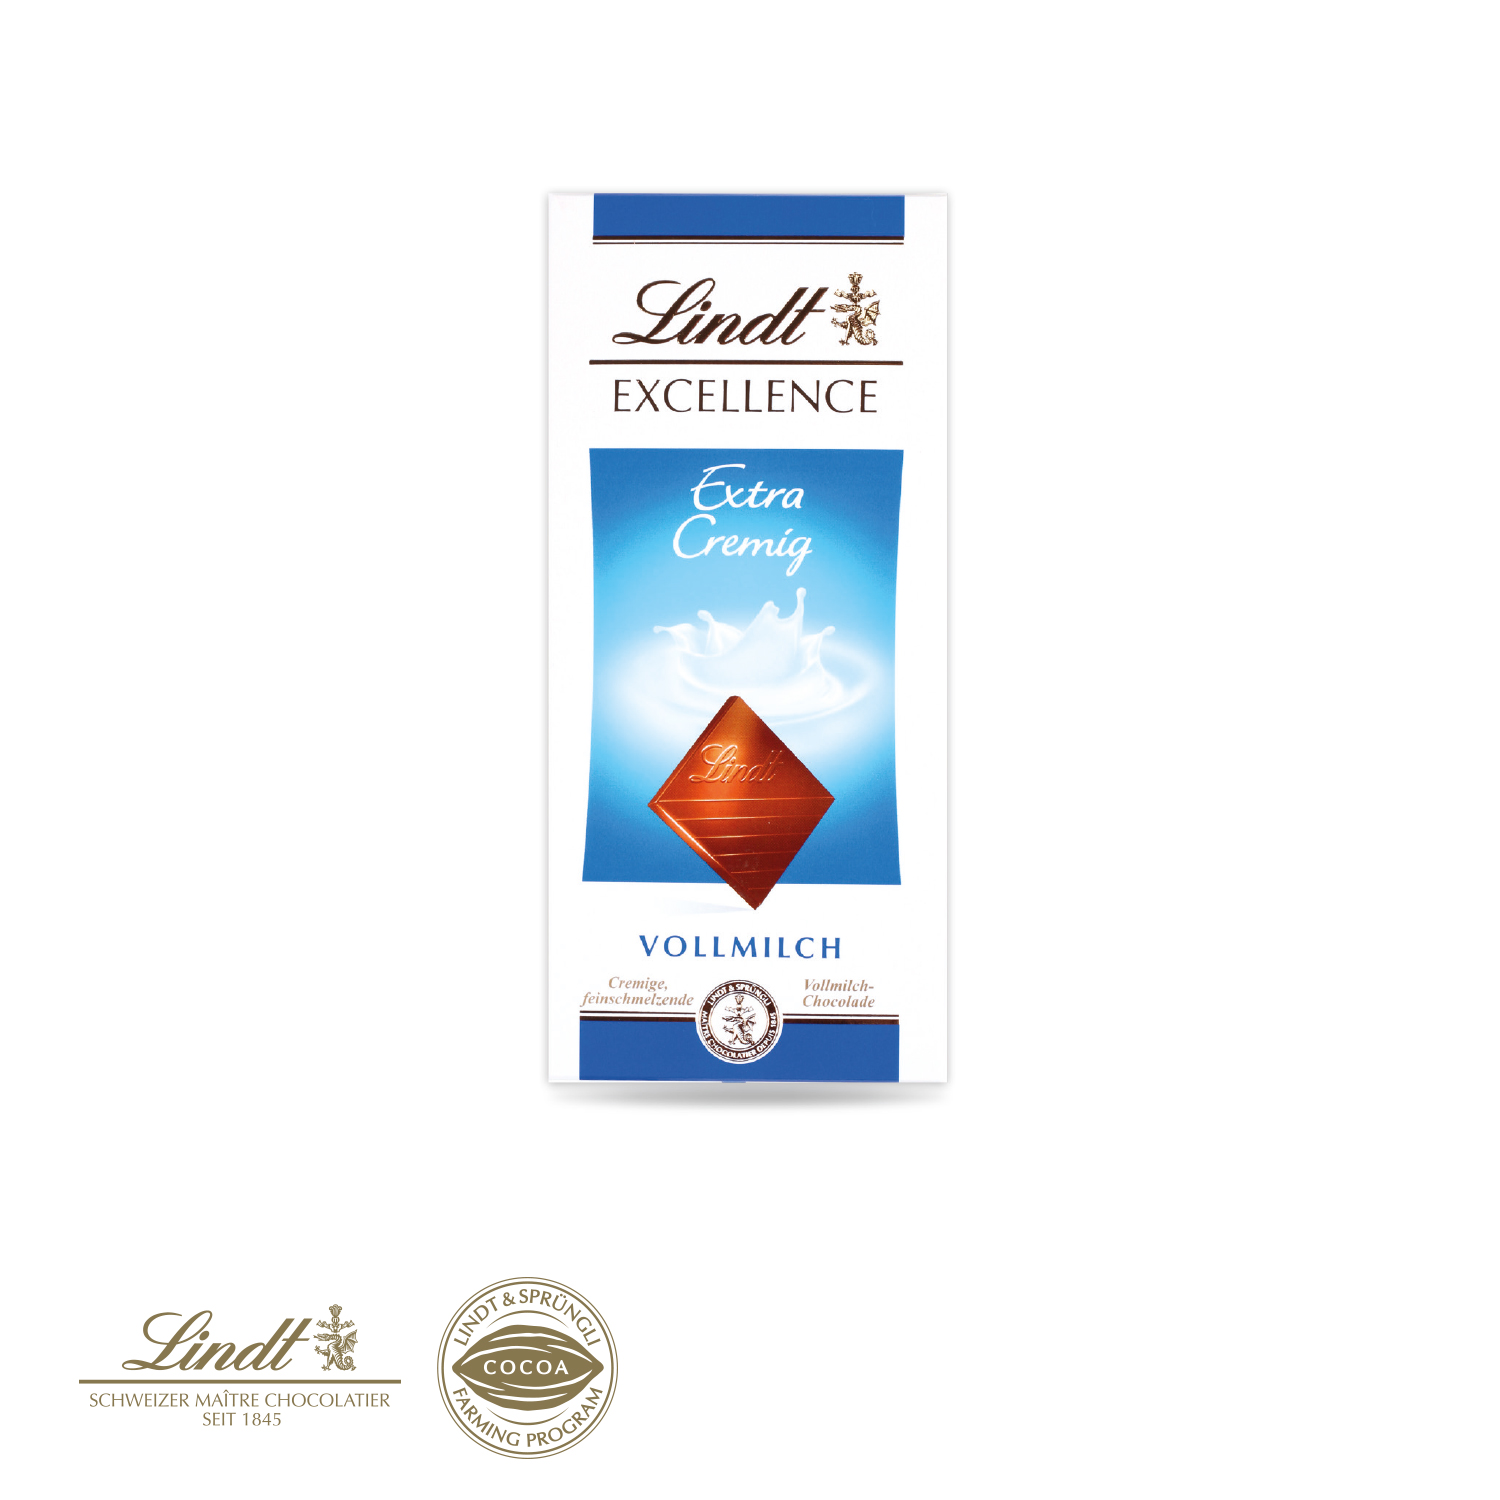 Grußkarte mit Schokoladentafel von Lindt „Excellence“